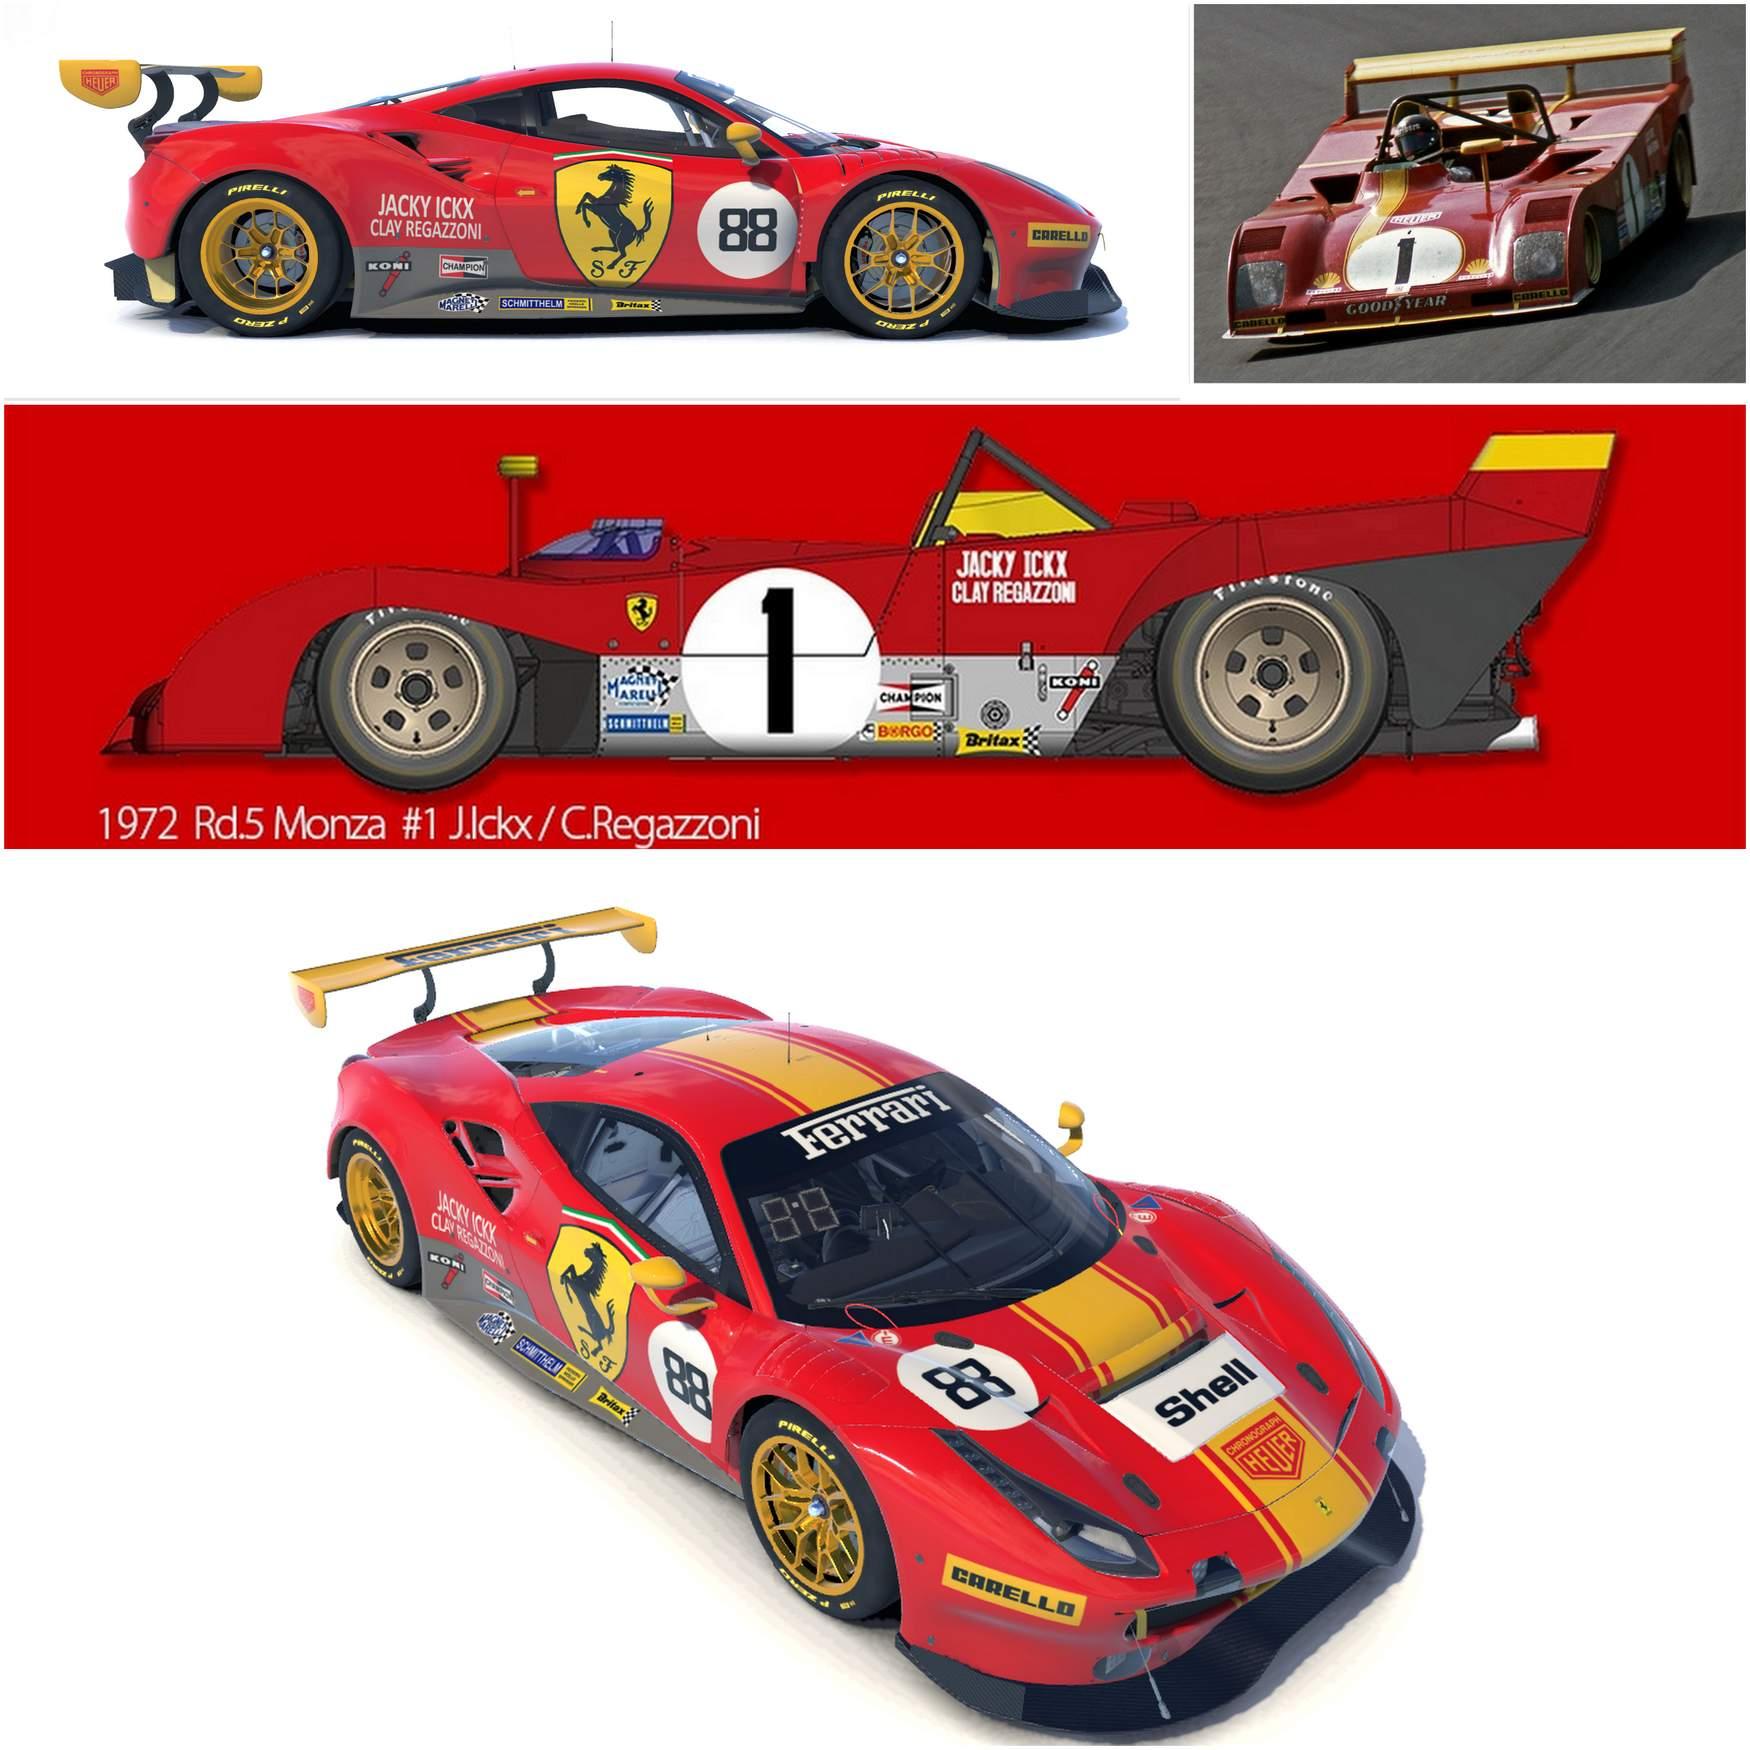 Preview of Ferrari GT3 Retro Livery by Paul V.